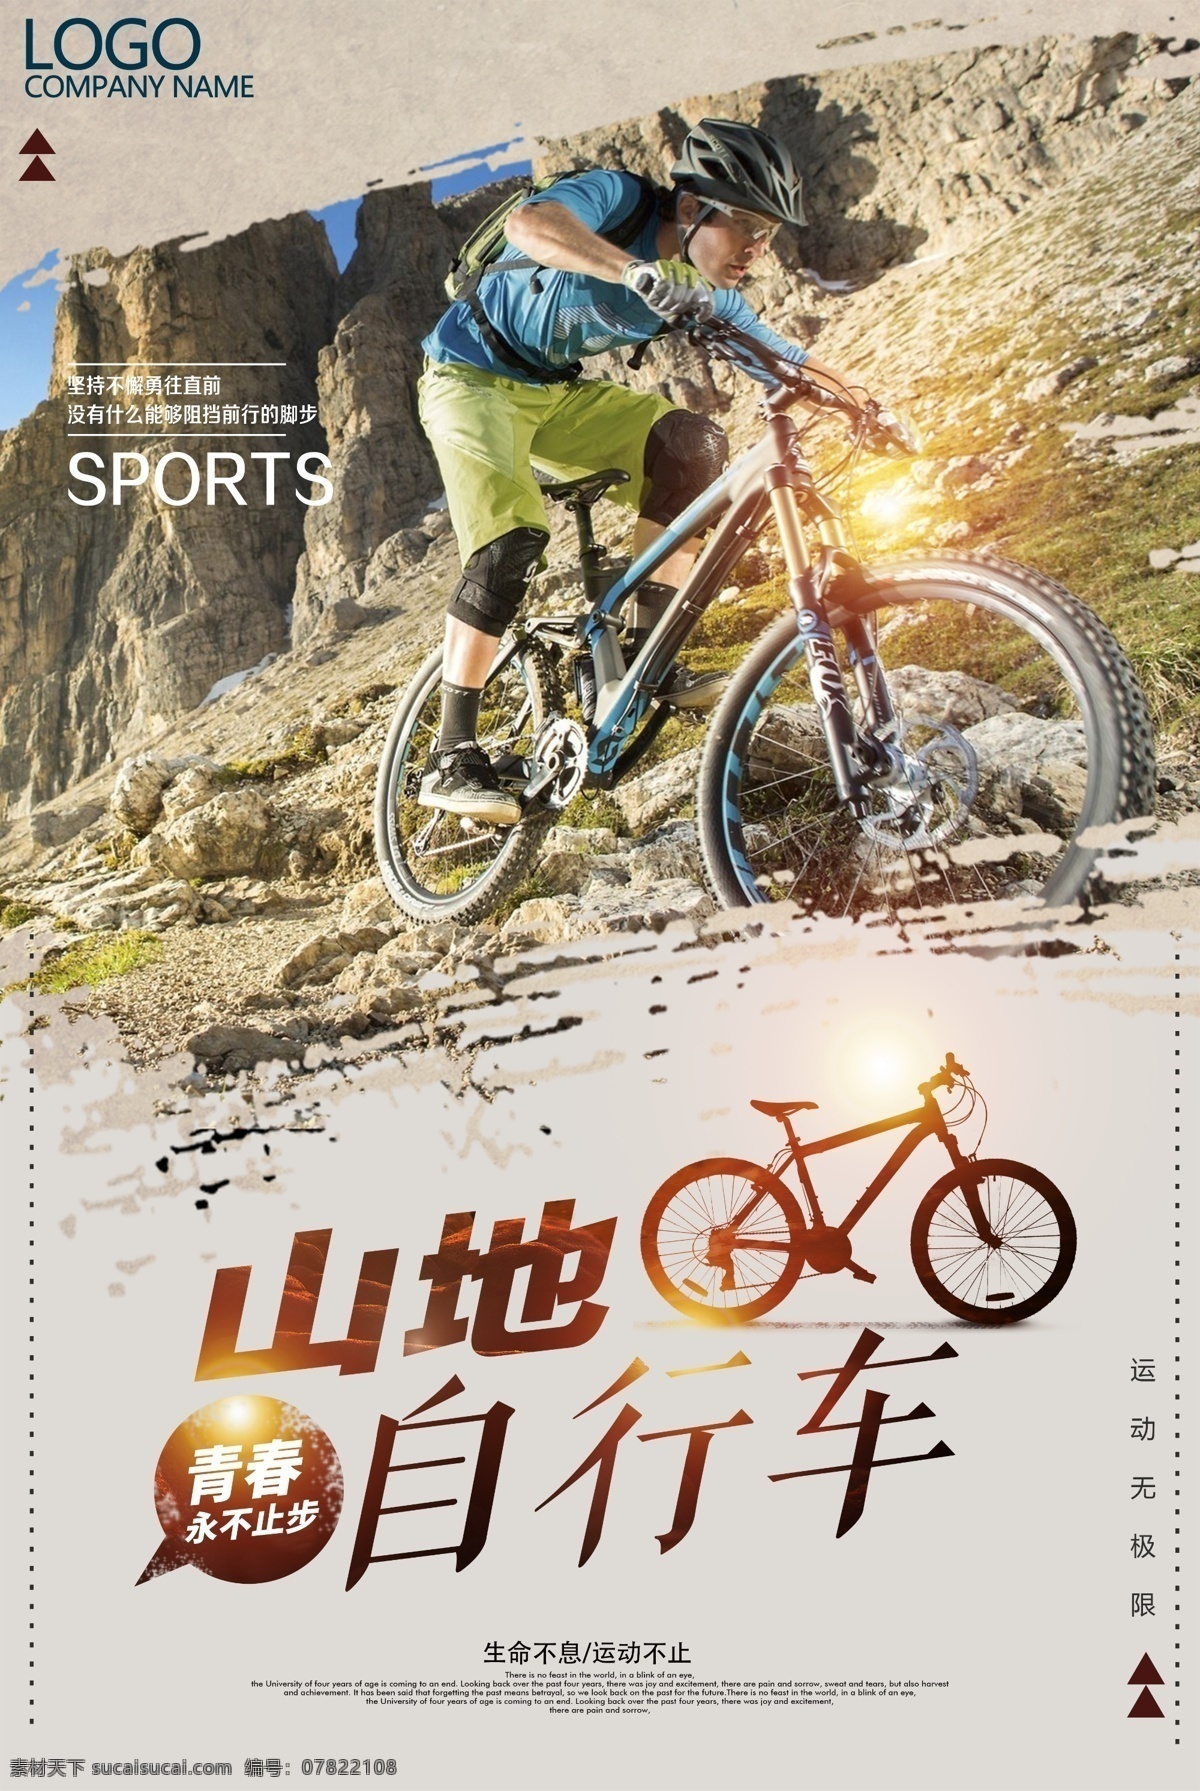 山地自行车 健身 健康 山地 户外 比赛 娱乐 运动 运输 踏板 自行车 自行车链 共享